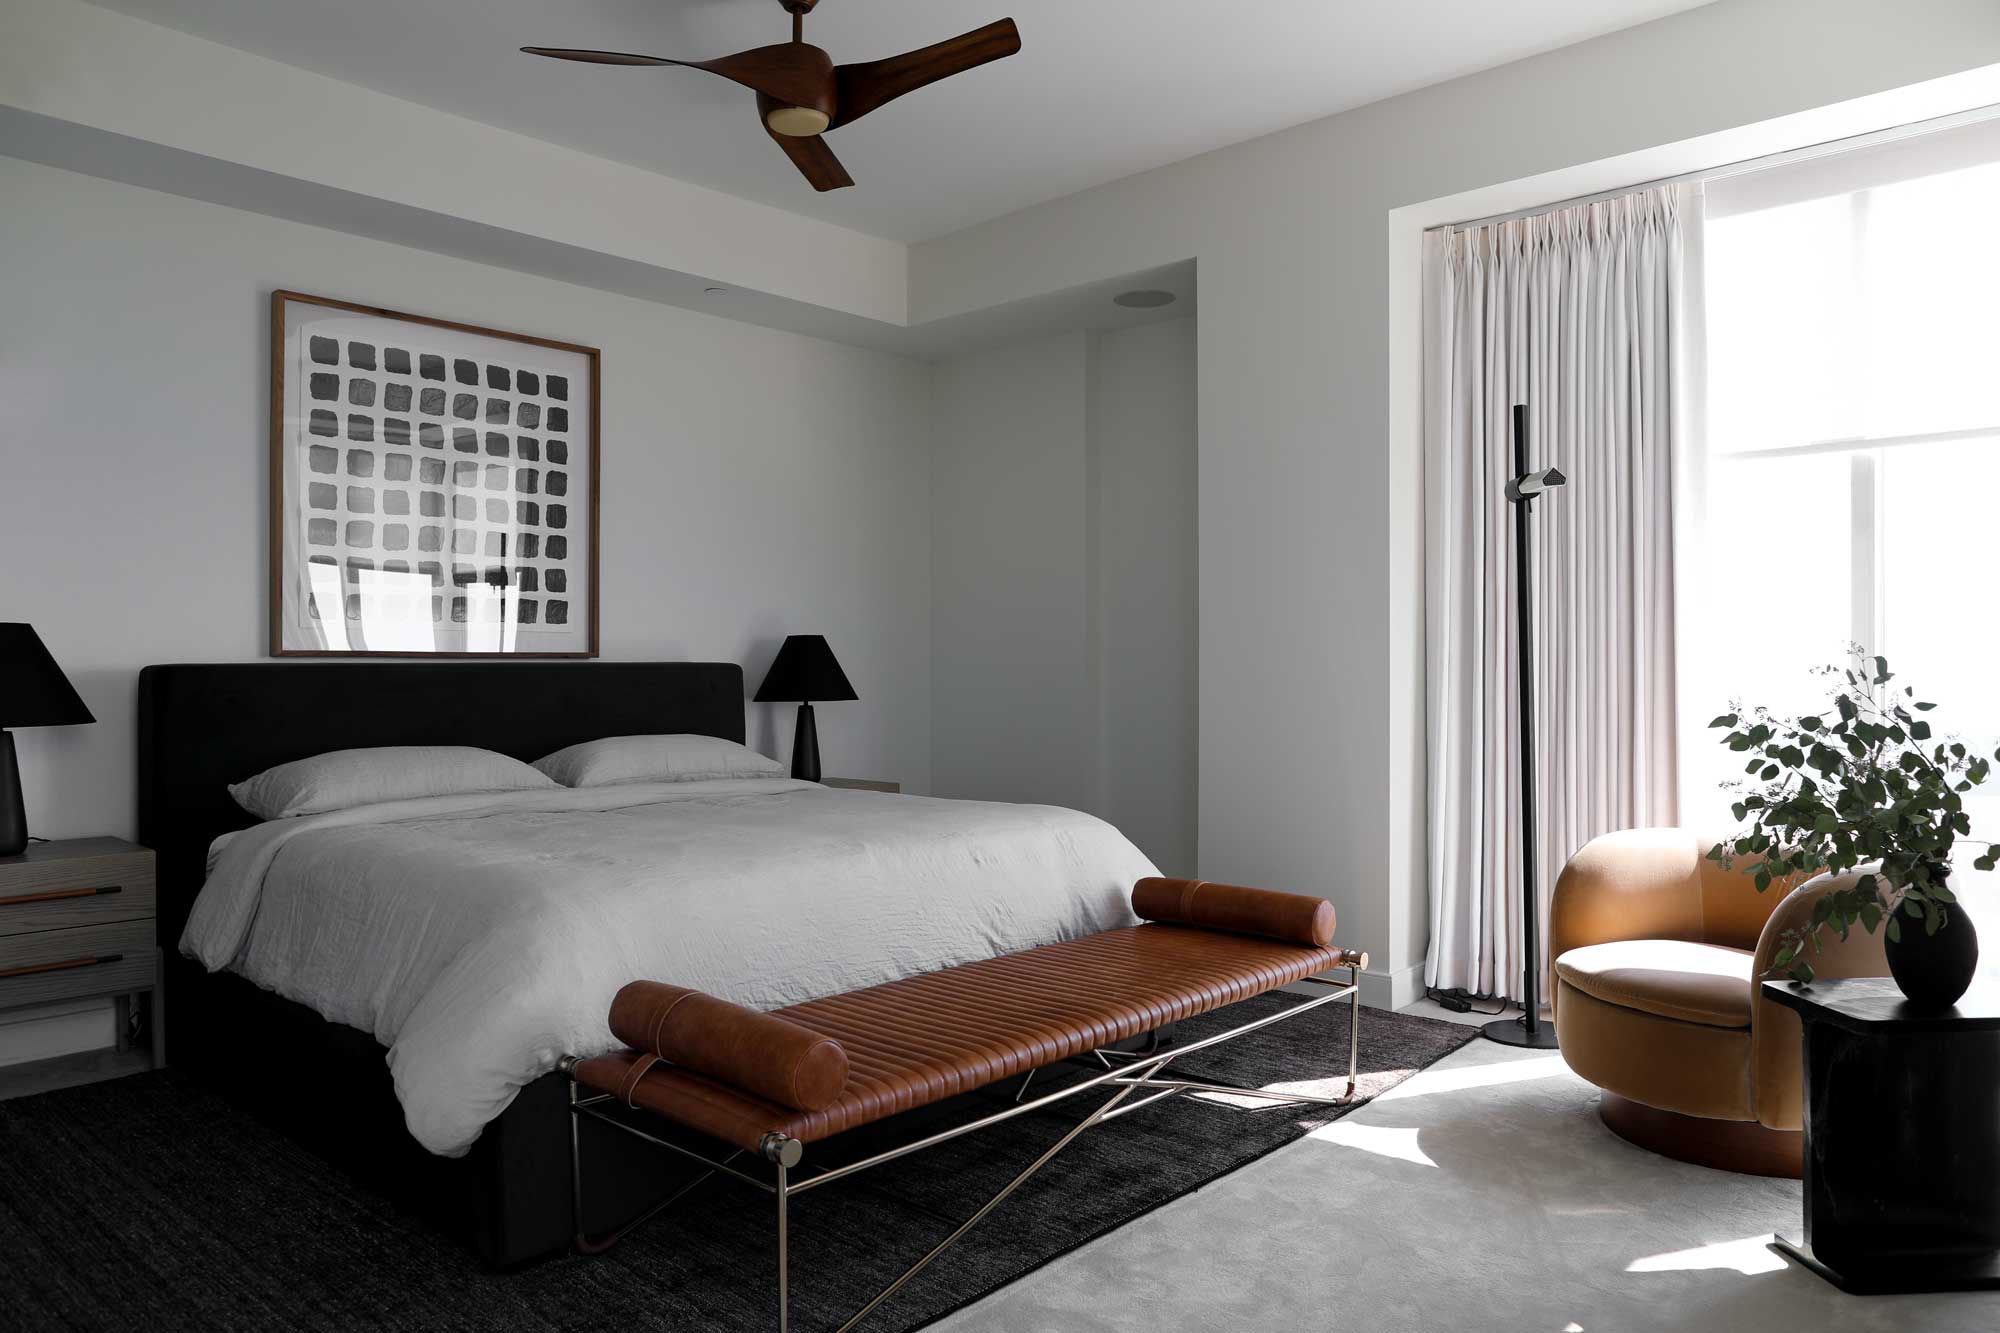 Bedroom design by interior designer Patchi Cancado in Virginia Beach